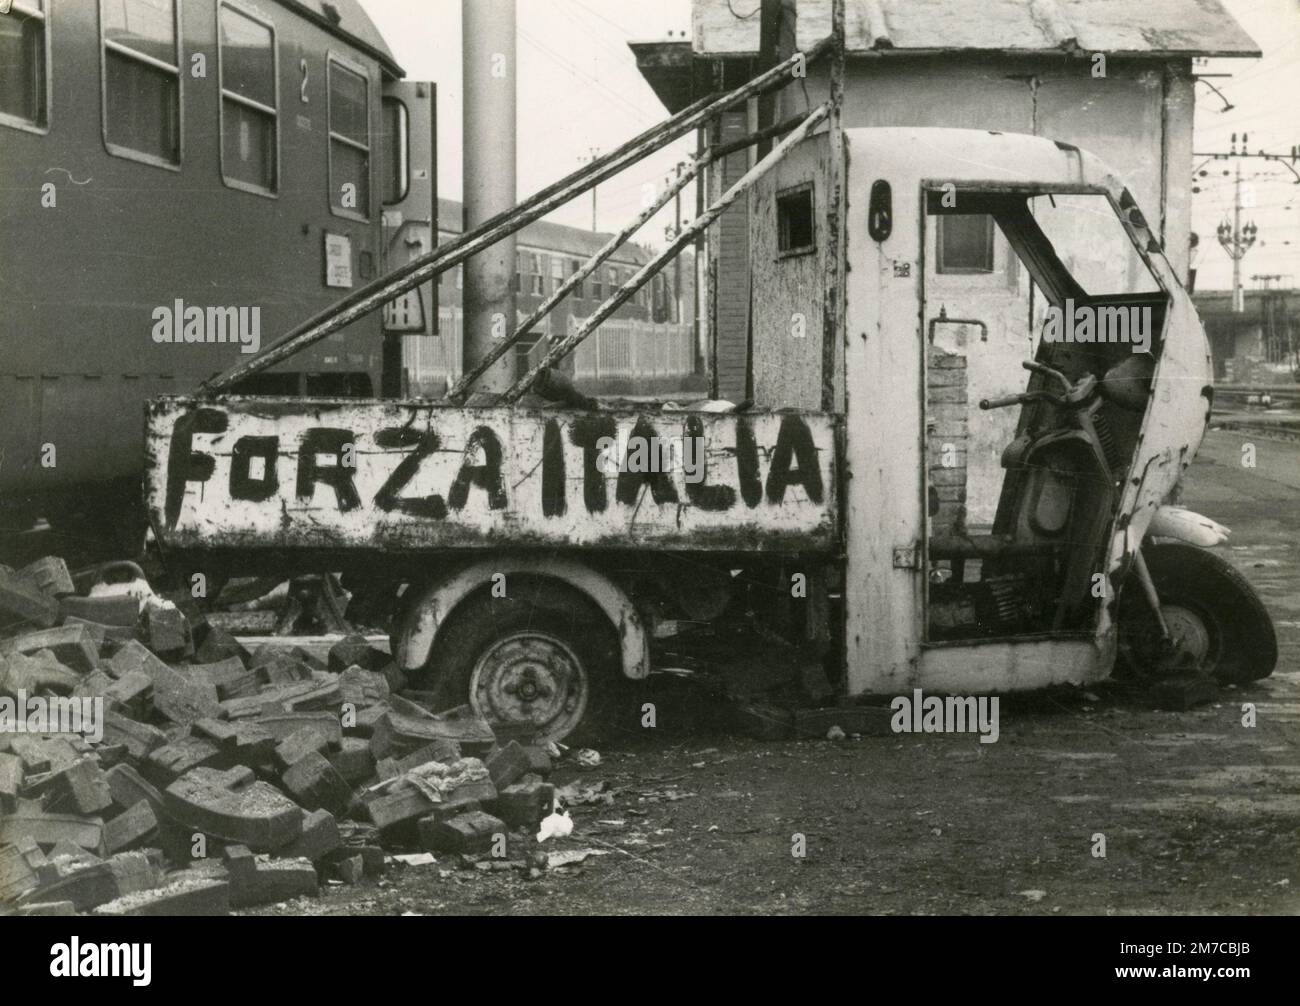 Spazzatura abbandonata della vettura a tre ruote Ape con il cartello forza Italia, stazione Prenestina, Roma, Italia 1978 Foto Stock